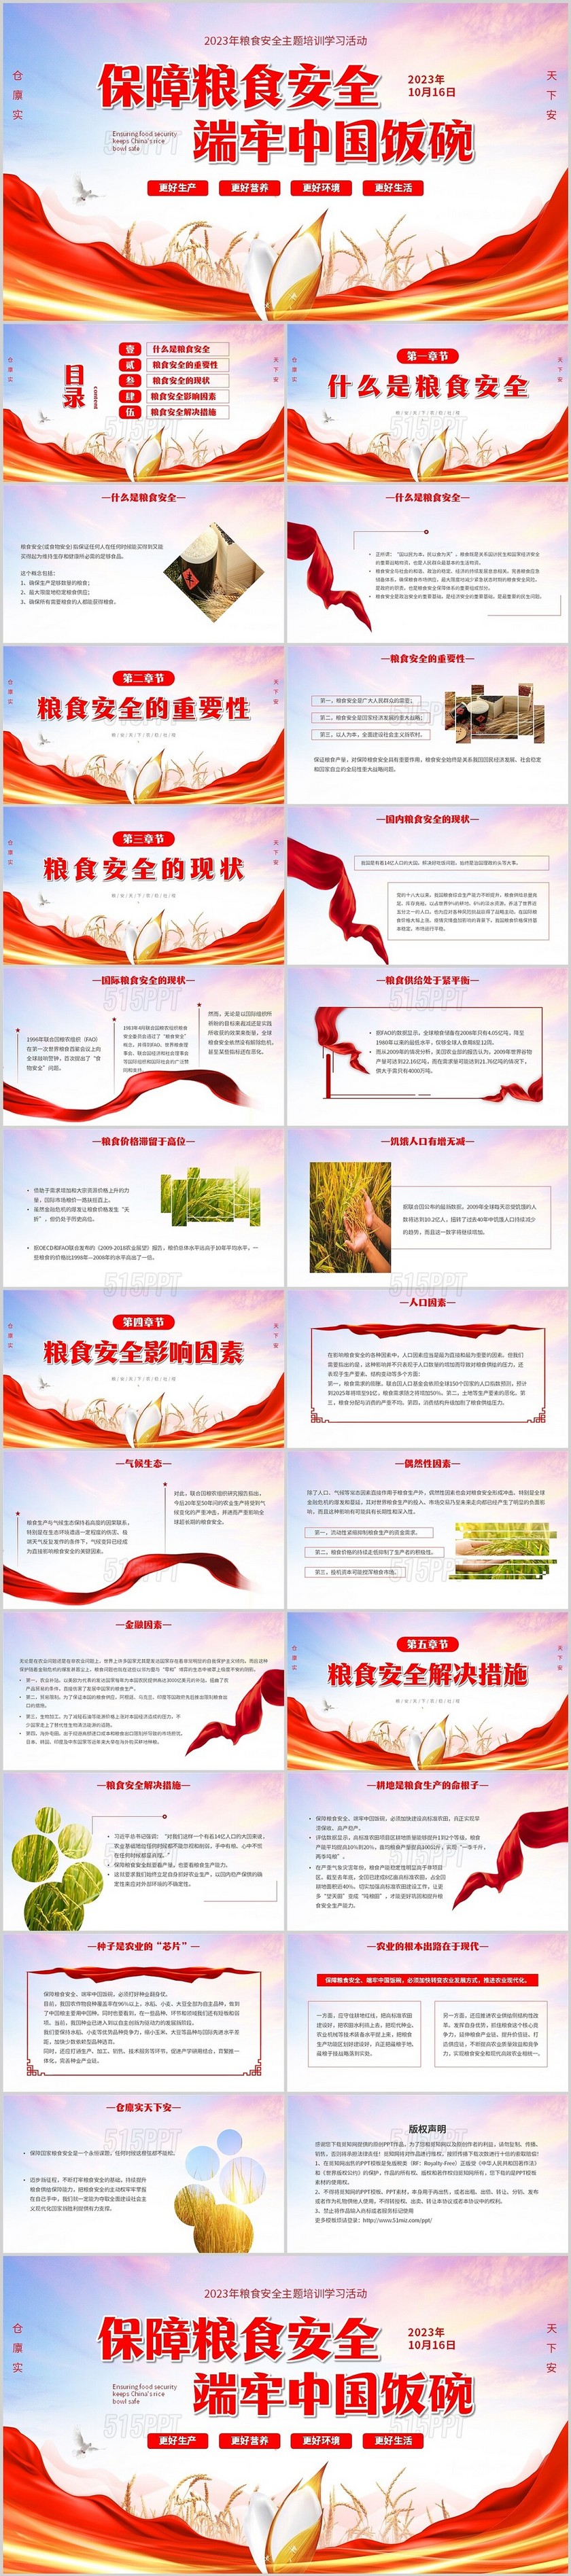 红色简约大气保障粮食安全端牢中国饭碗粮食安全主题培训PPT世界粮食日